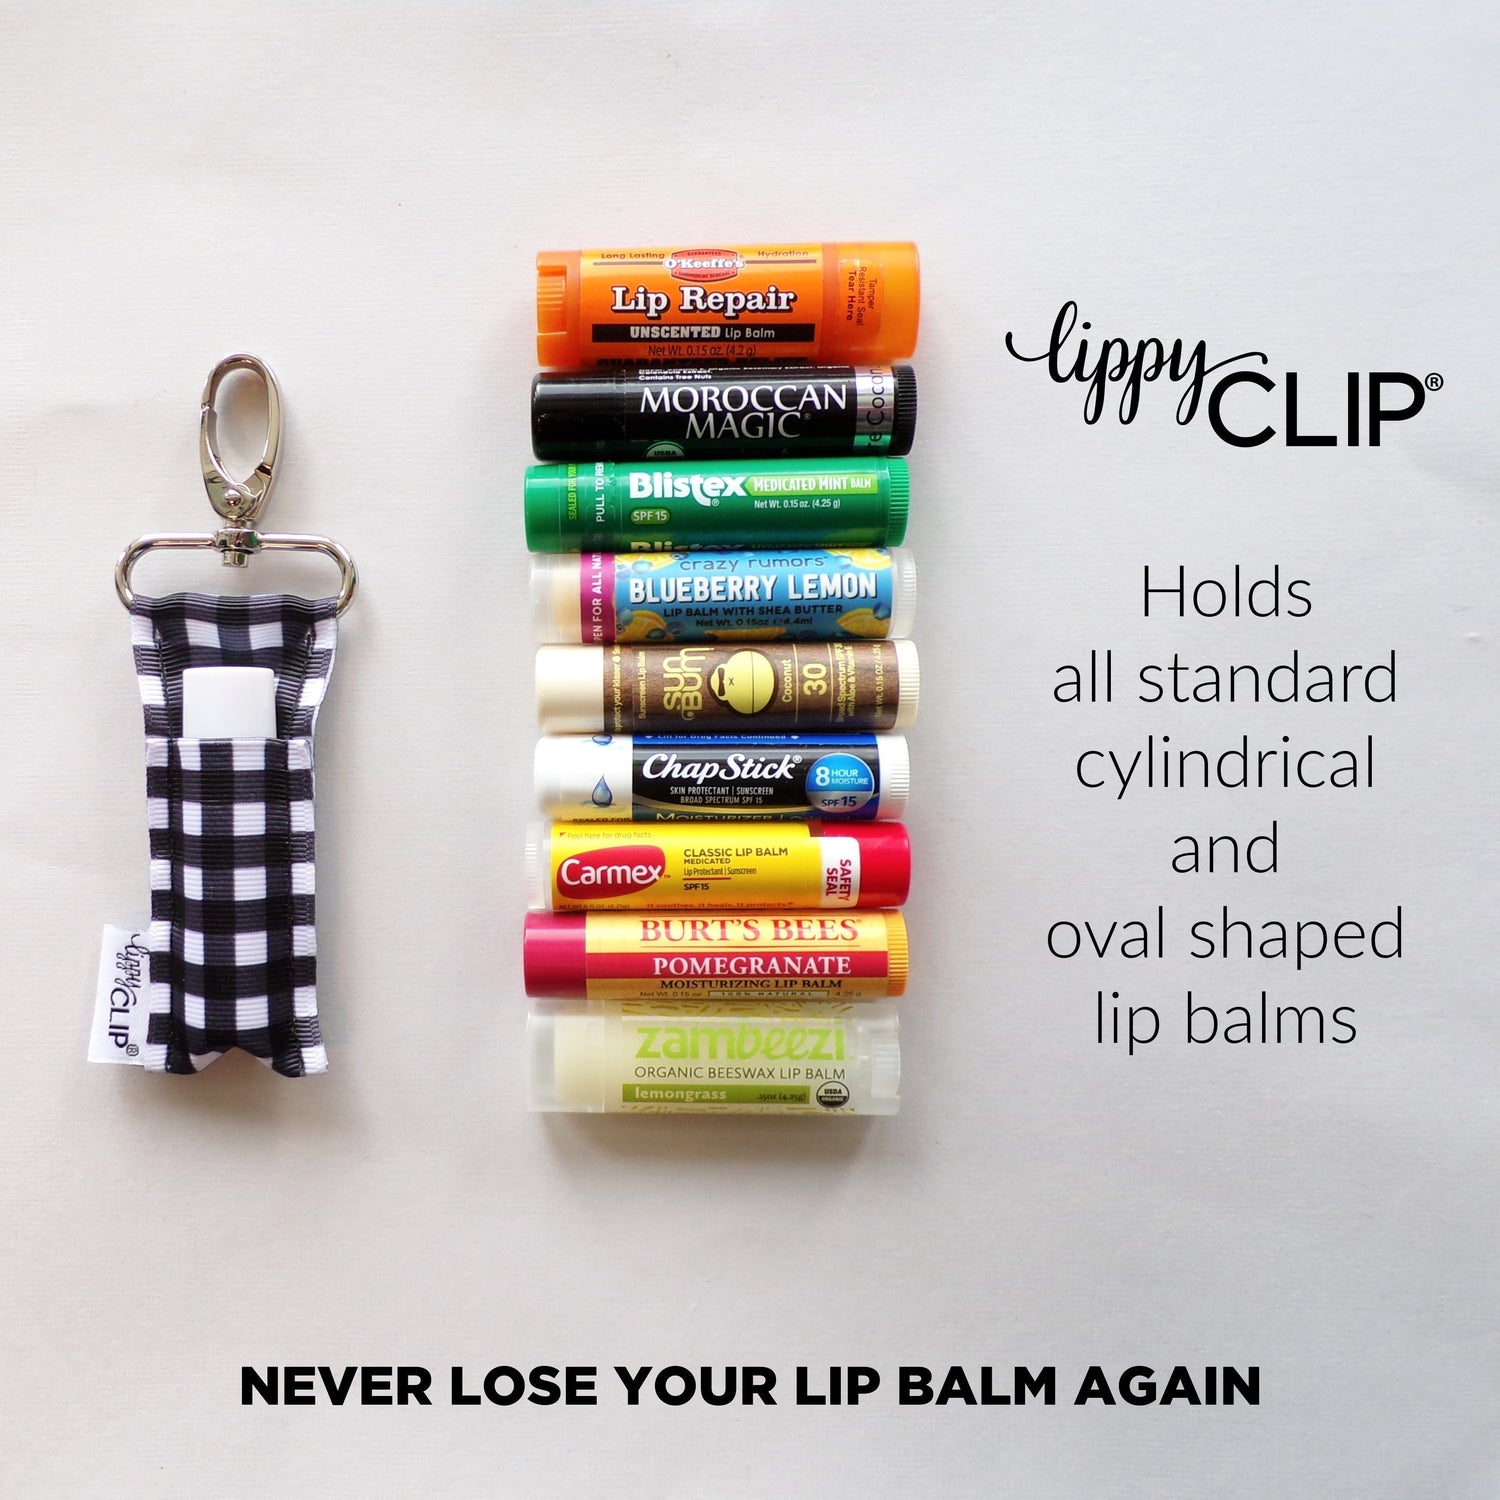 Colored Pencils LippyClip® Lip Balm Holder